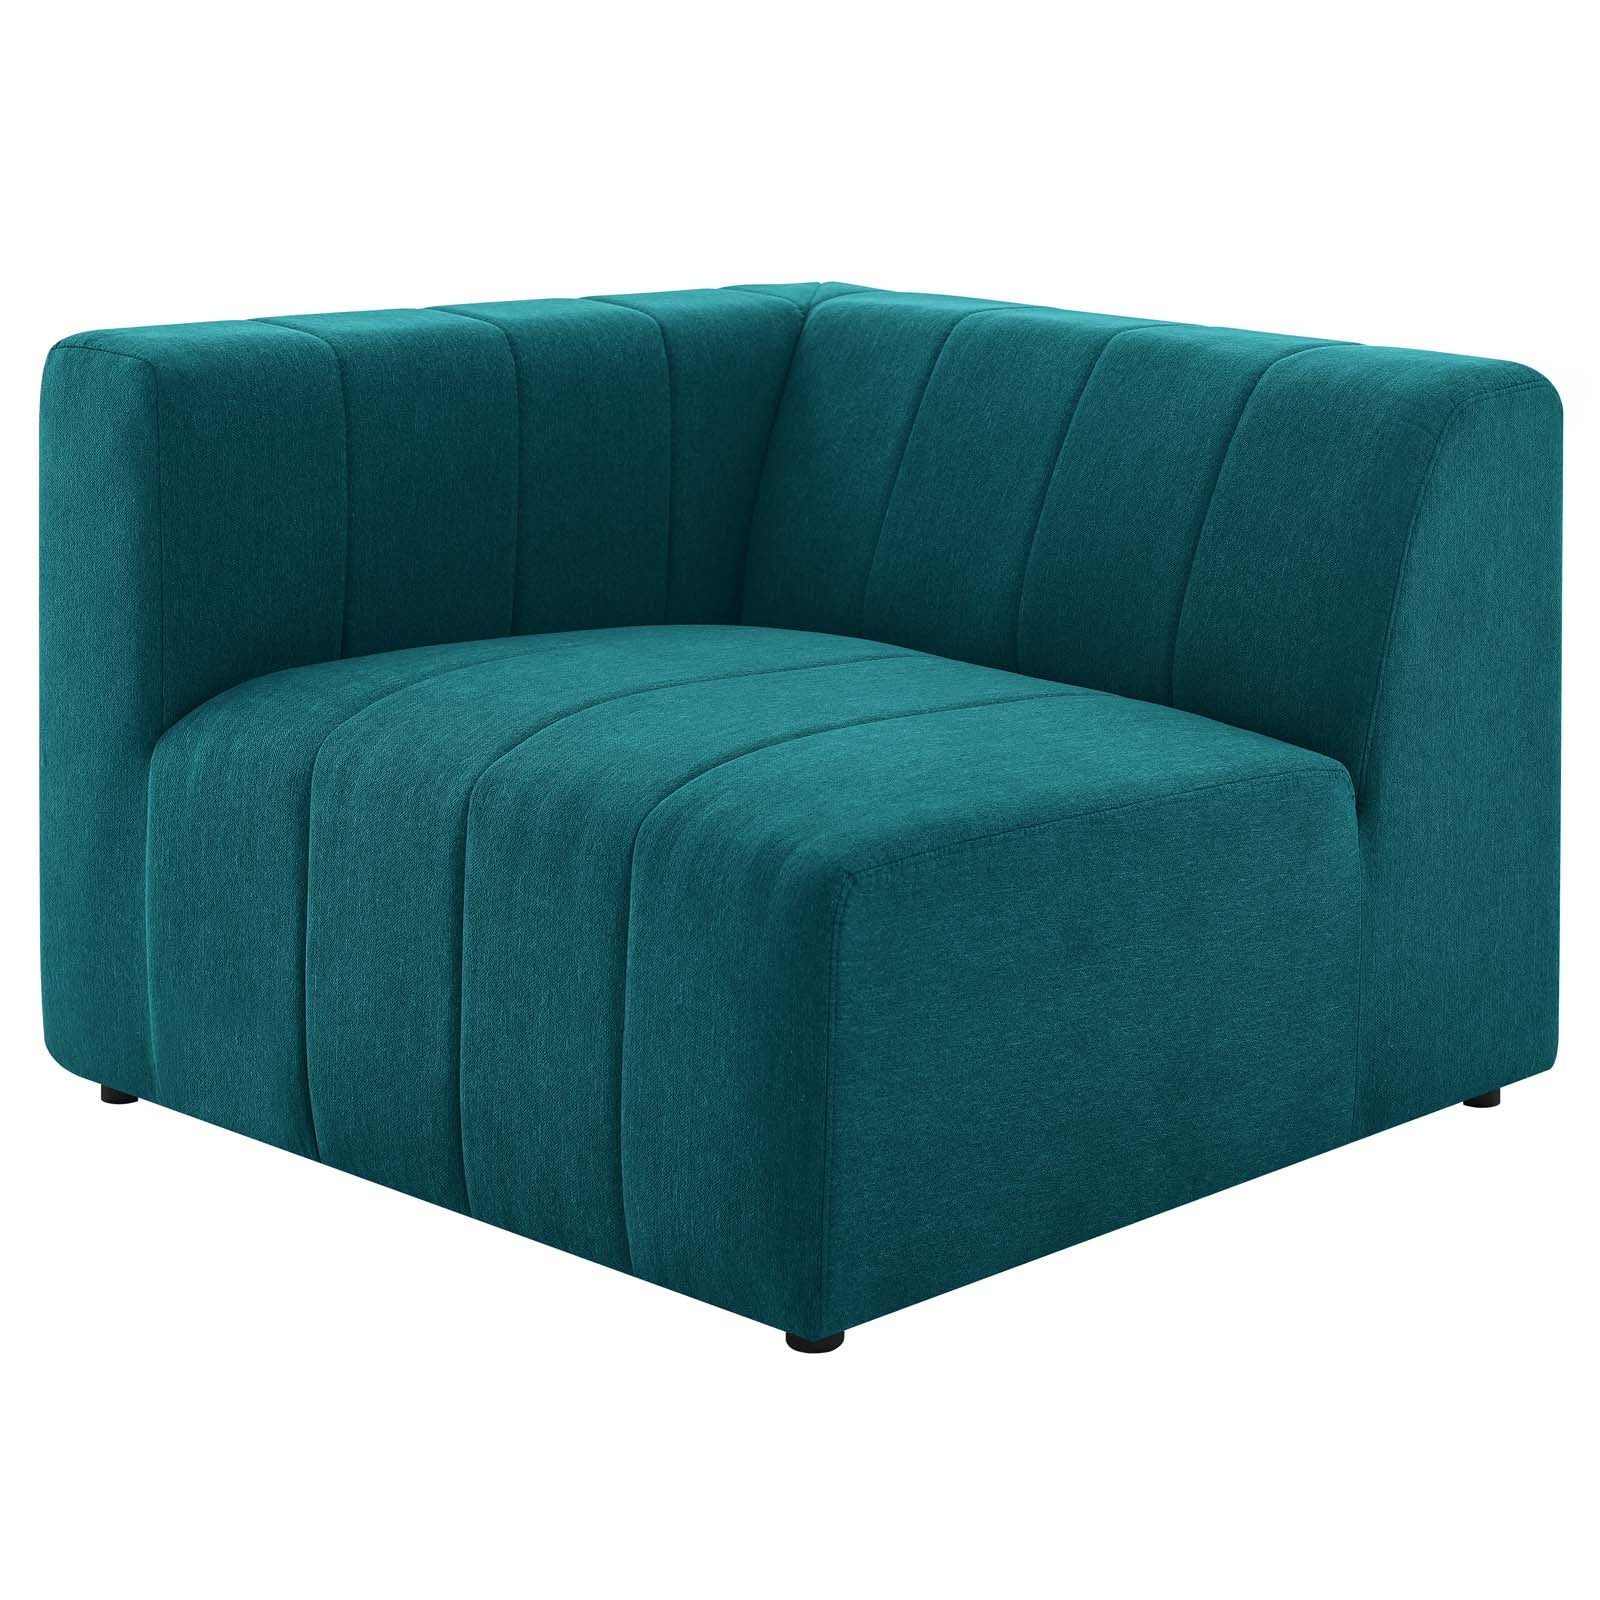 Bartlett Upholstered Fabric Left-Arm Chair - East Shore Modern Home Furnishings